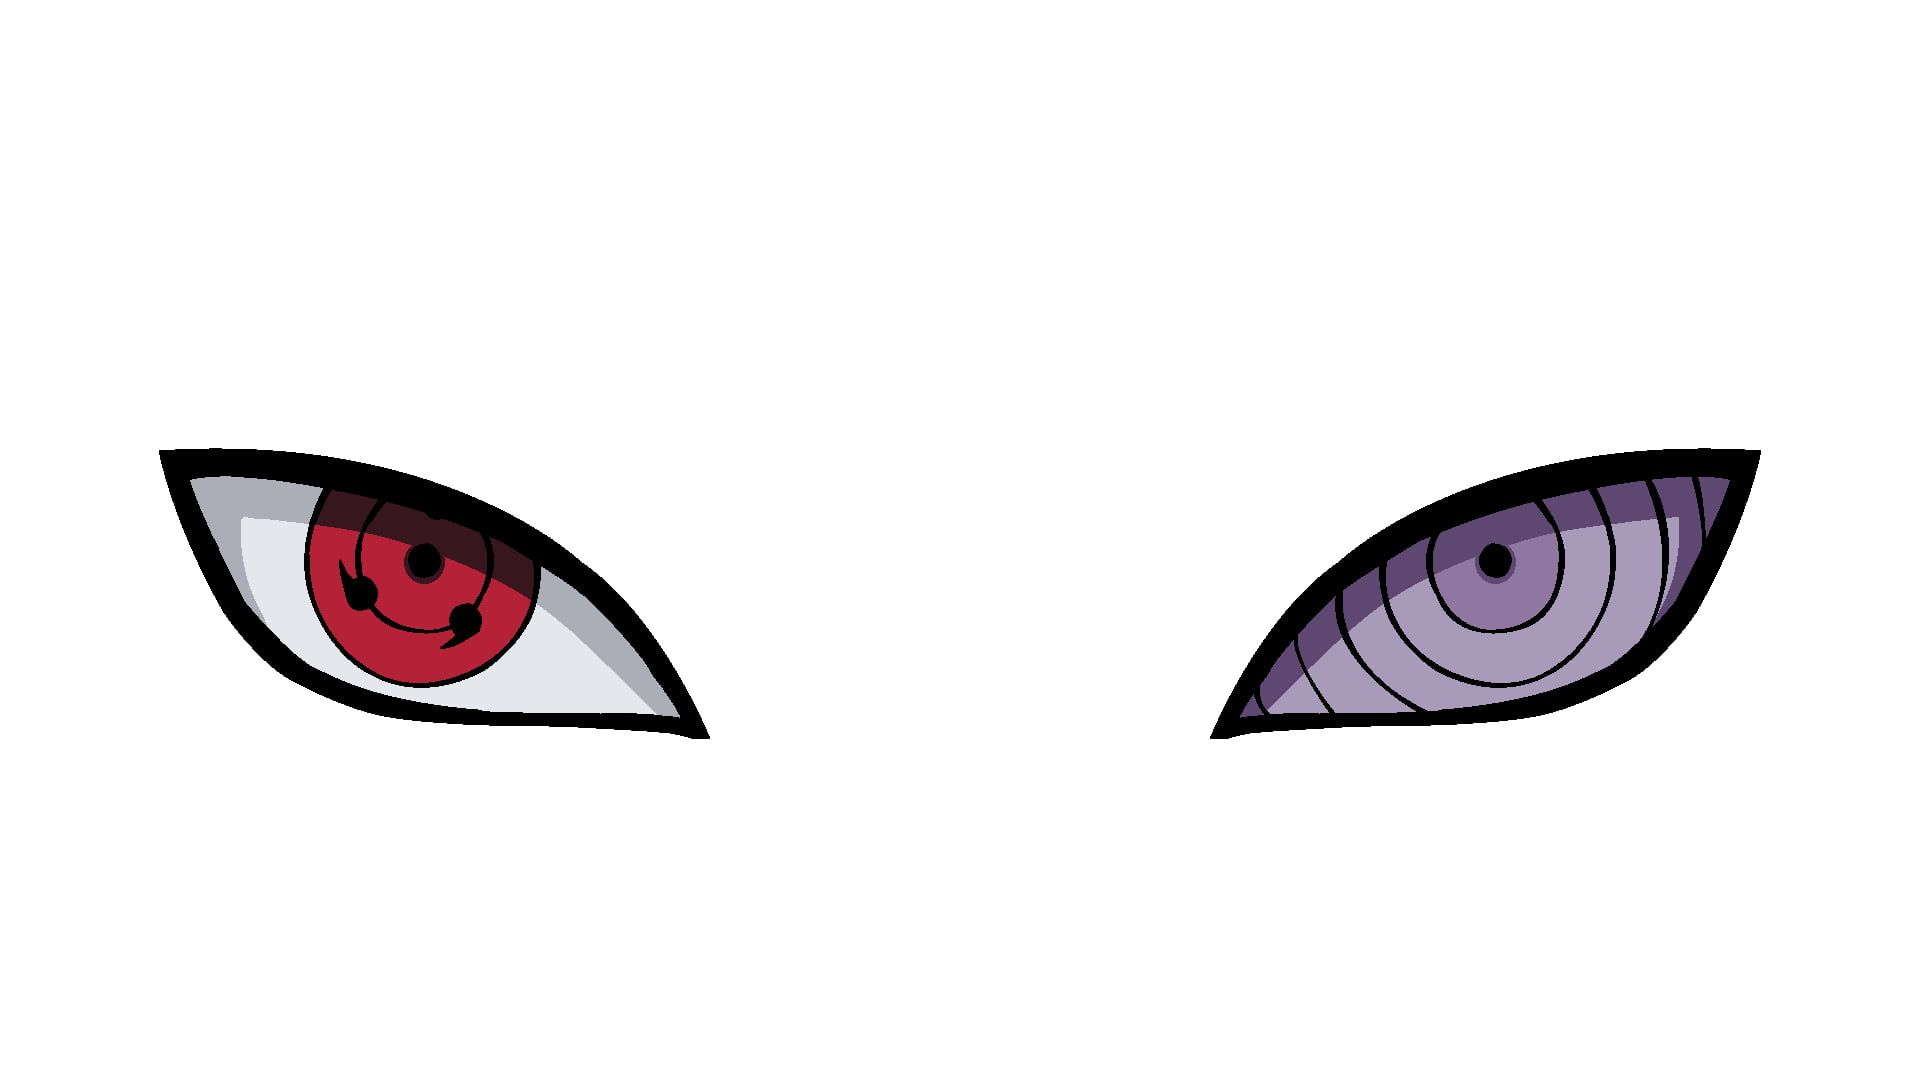 Naruto Sharingan Eye Illustration Rinnegan